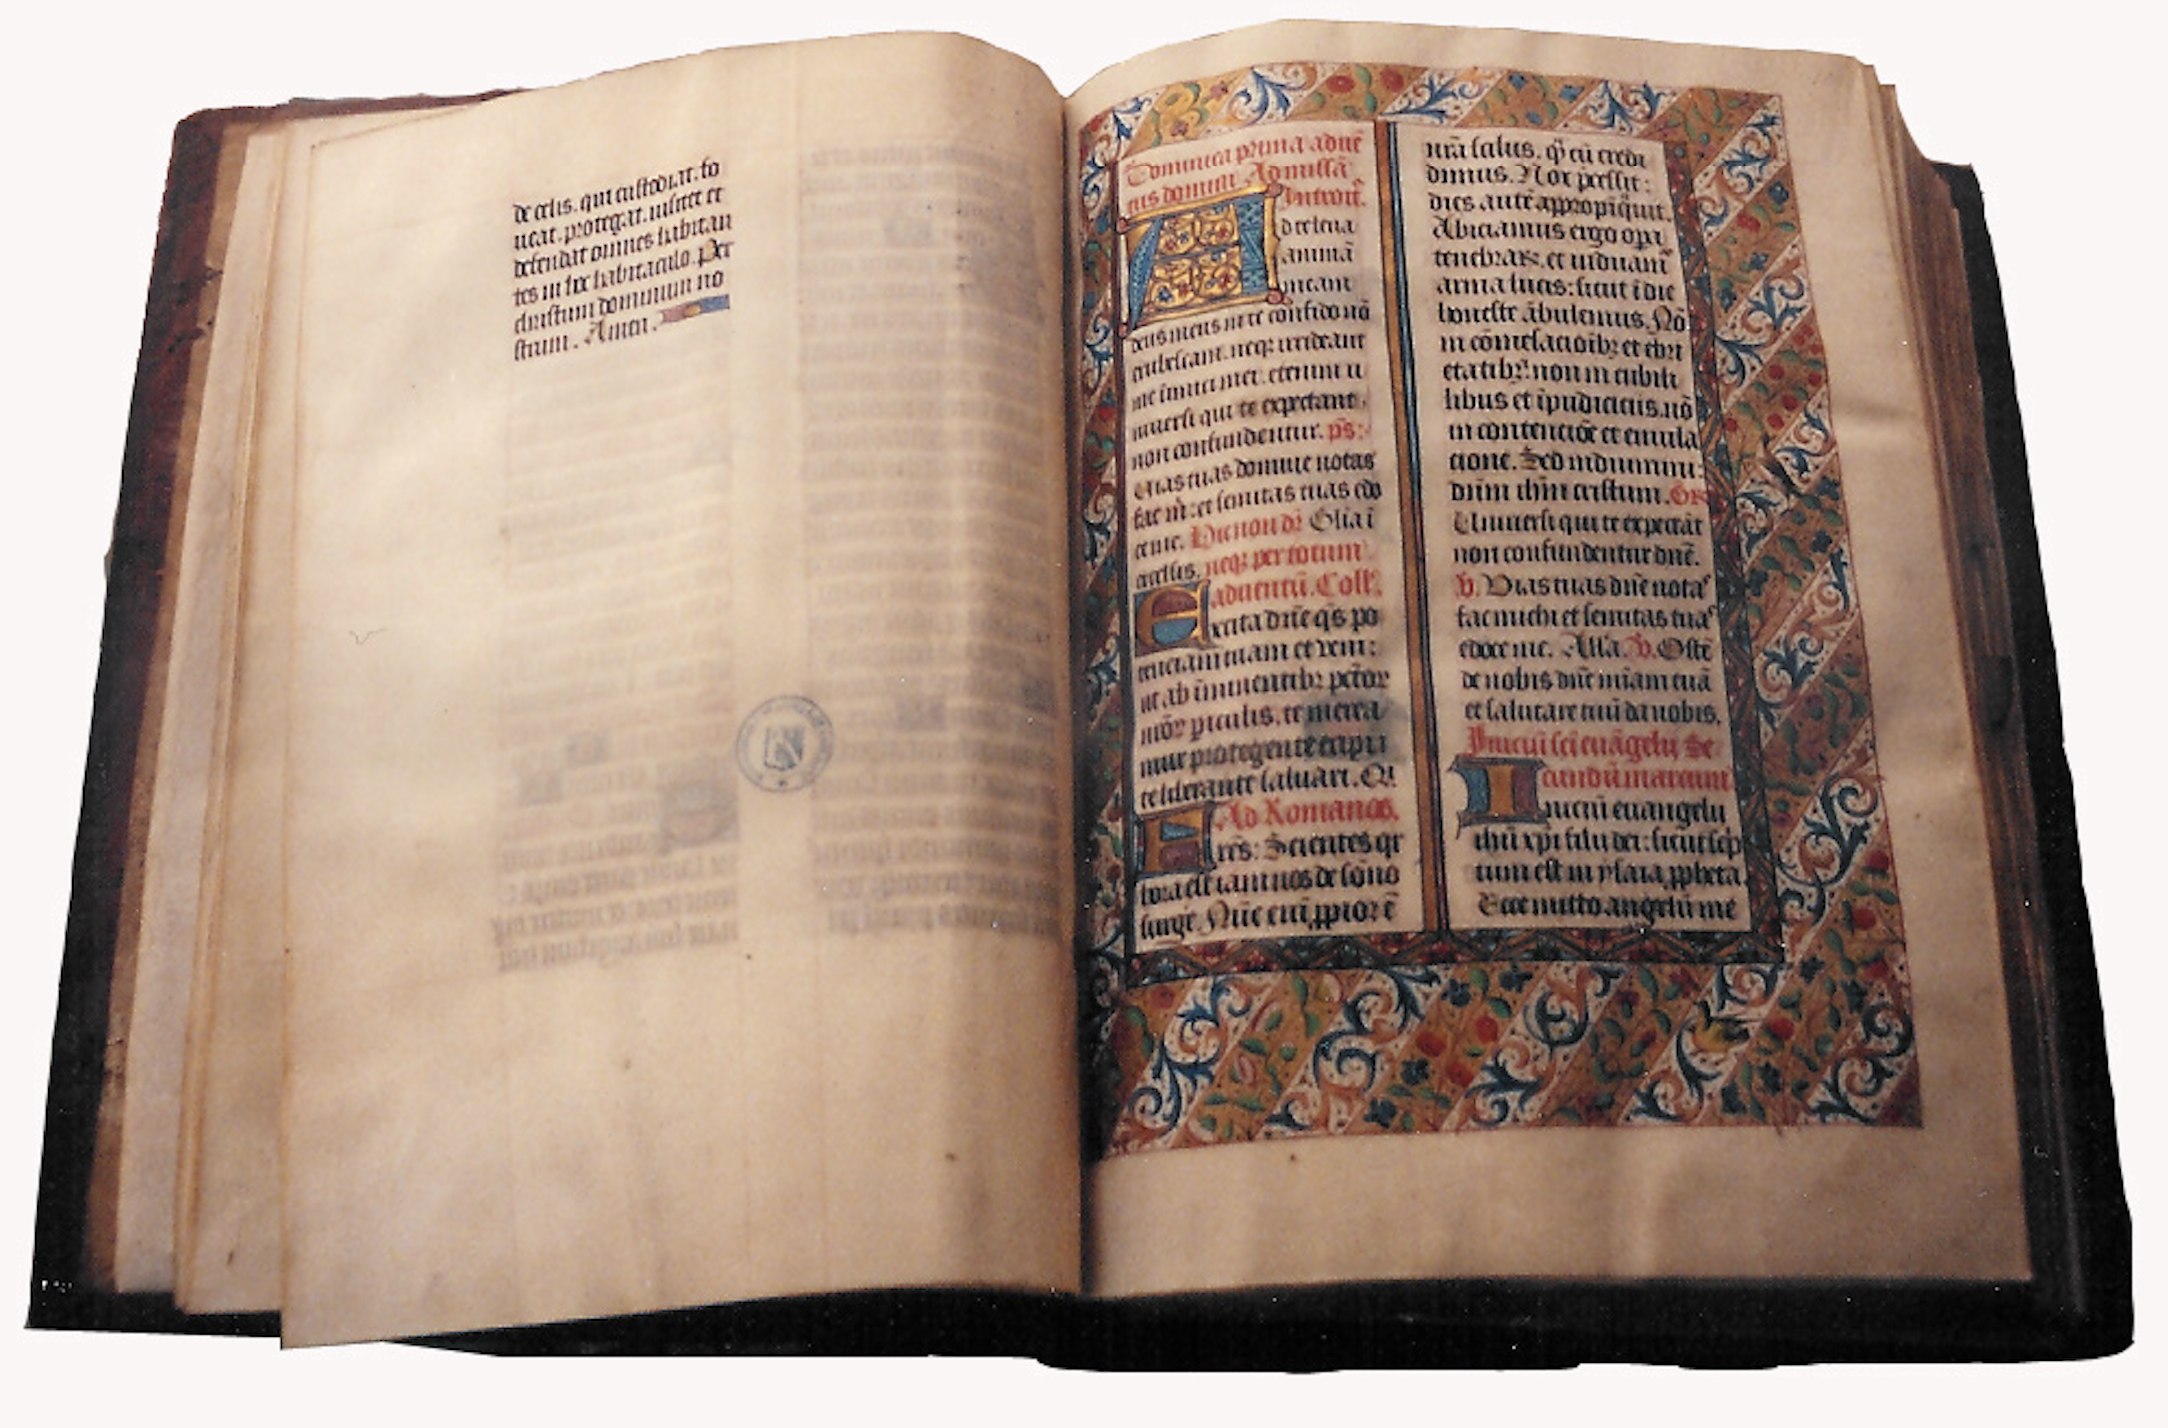 Les manuscrits au Moyen Âge étaient essentiellement rédigés par des moines copistes. © Frédéric Brice, Wikimedia Commons, CC by-sa 3.0